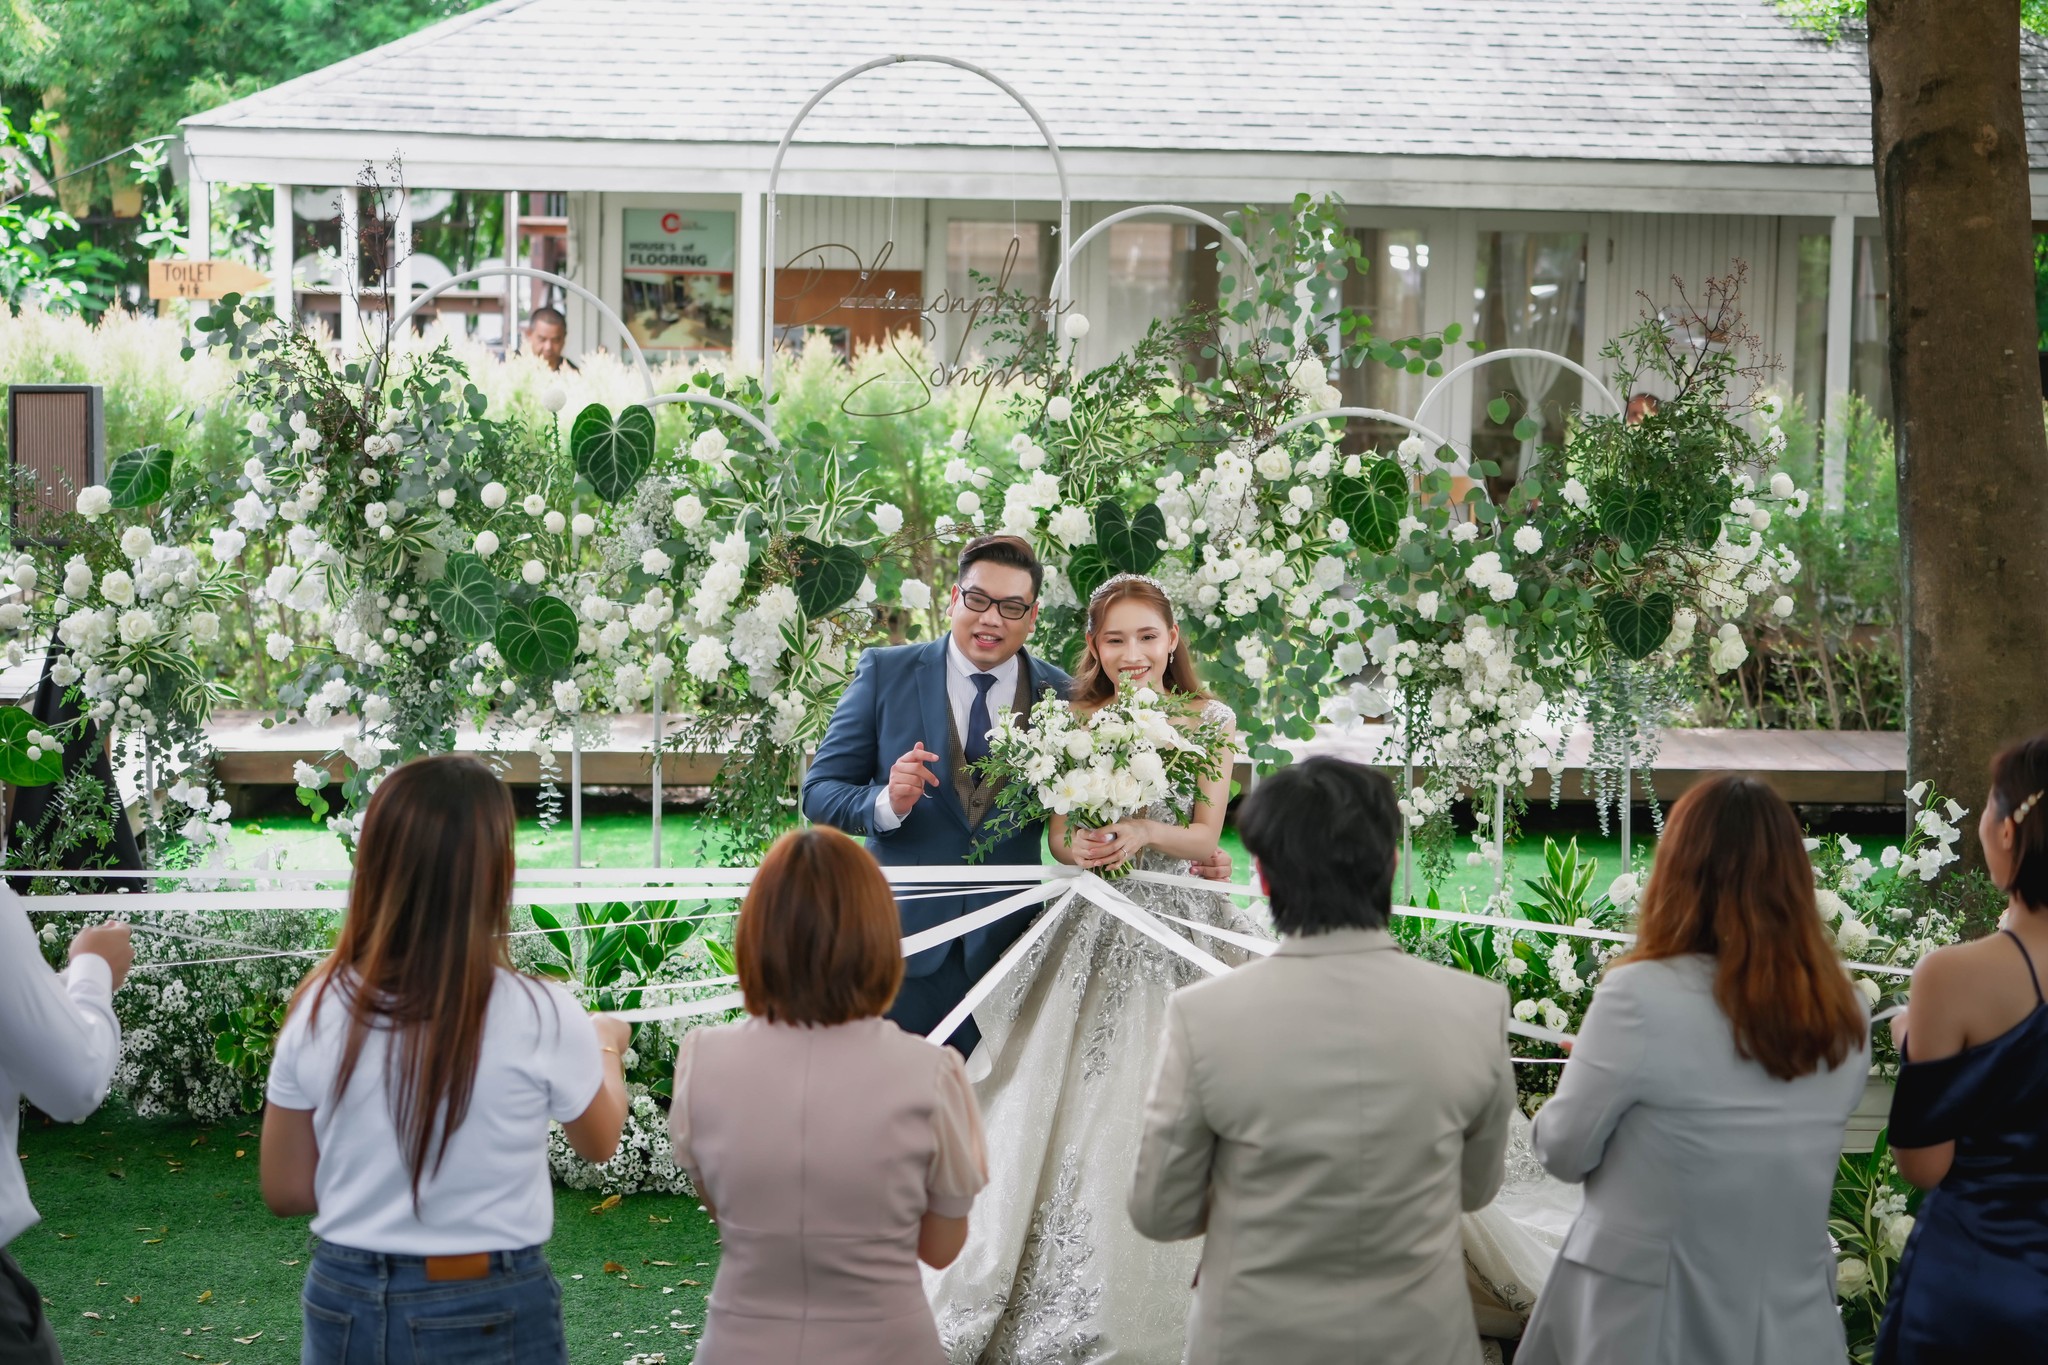 งานแต่งงานในสวน กรุงเทพ นนทบุรี ปริมณฑล